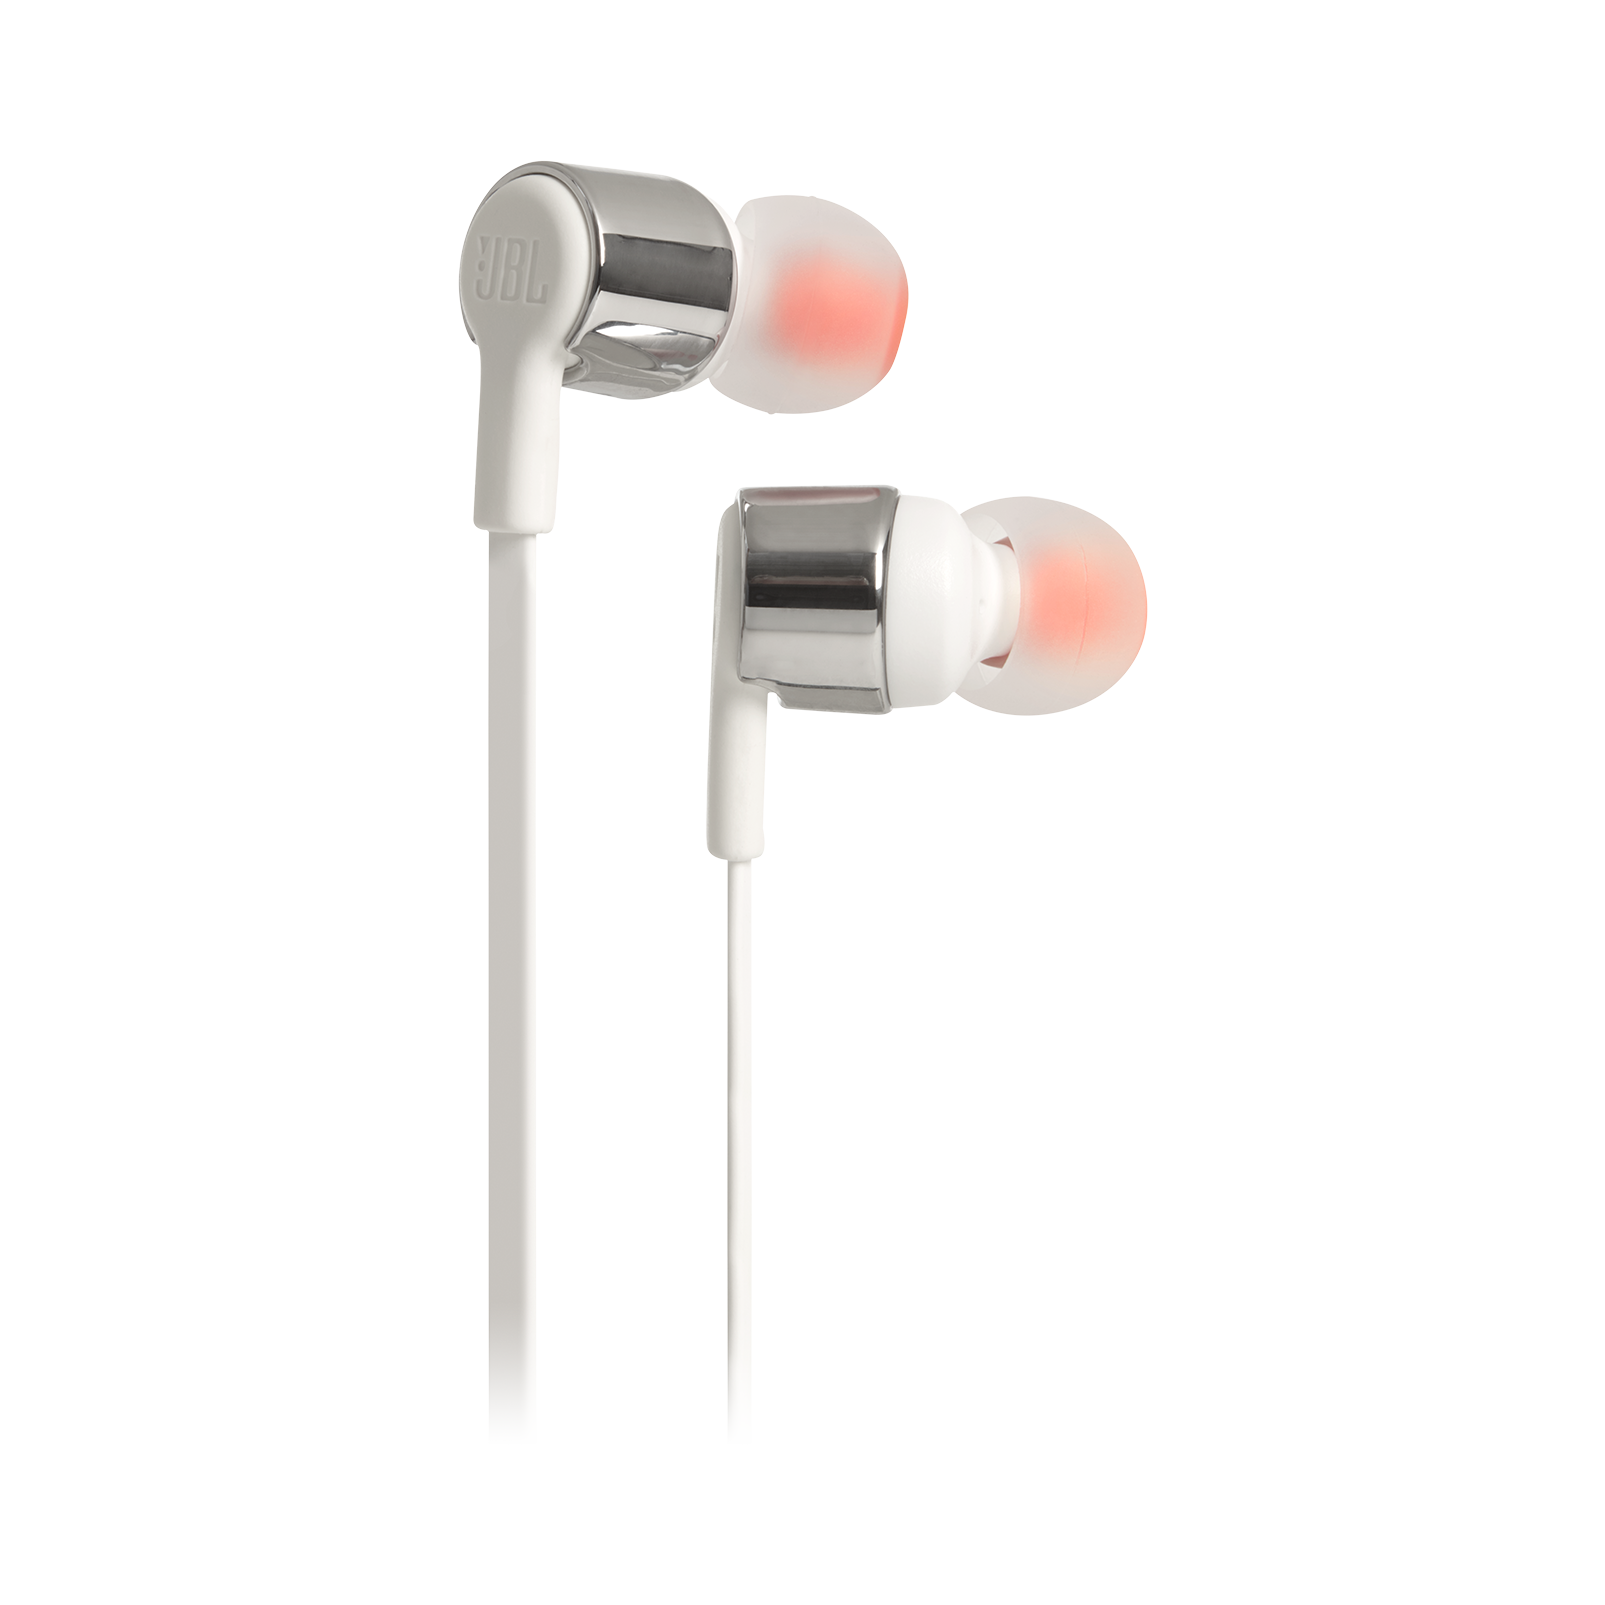 JBL Tune 210 - Grey - In-ear headphones - Hero